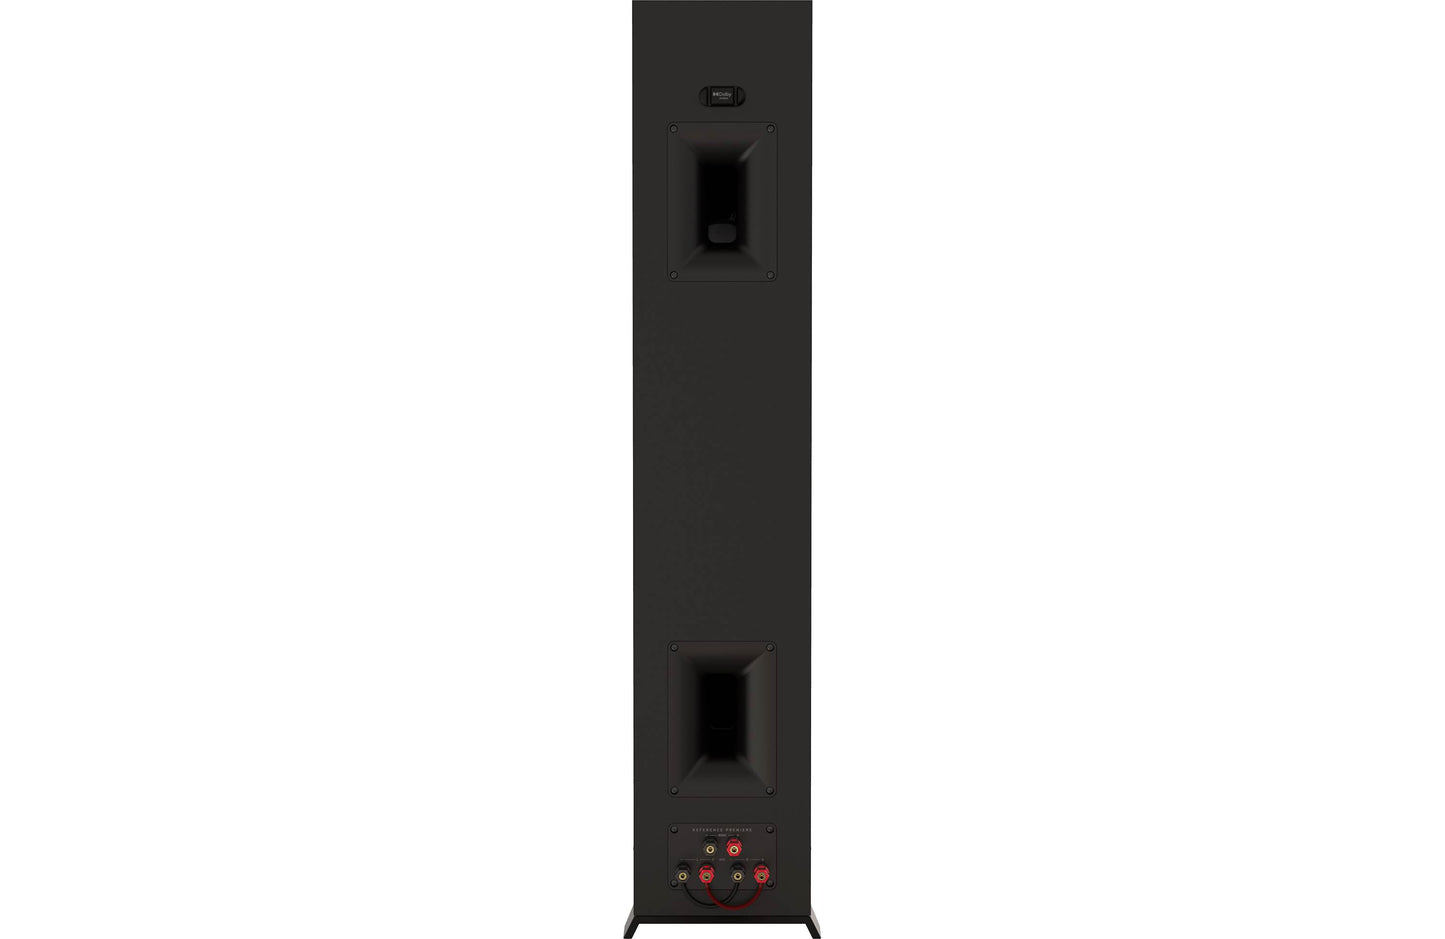 Klipsch RP-5000F II Floorstanding Speakers - pair - Ebony